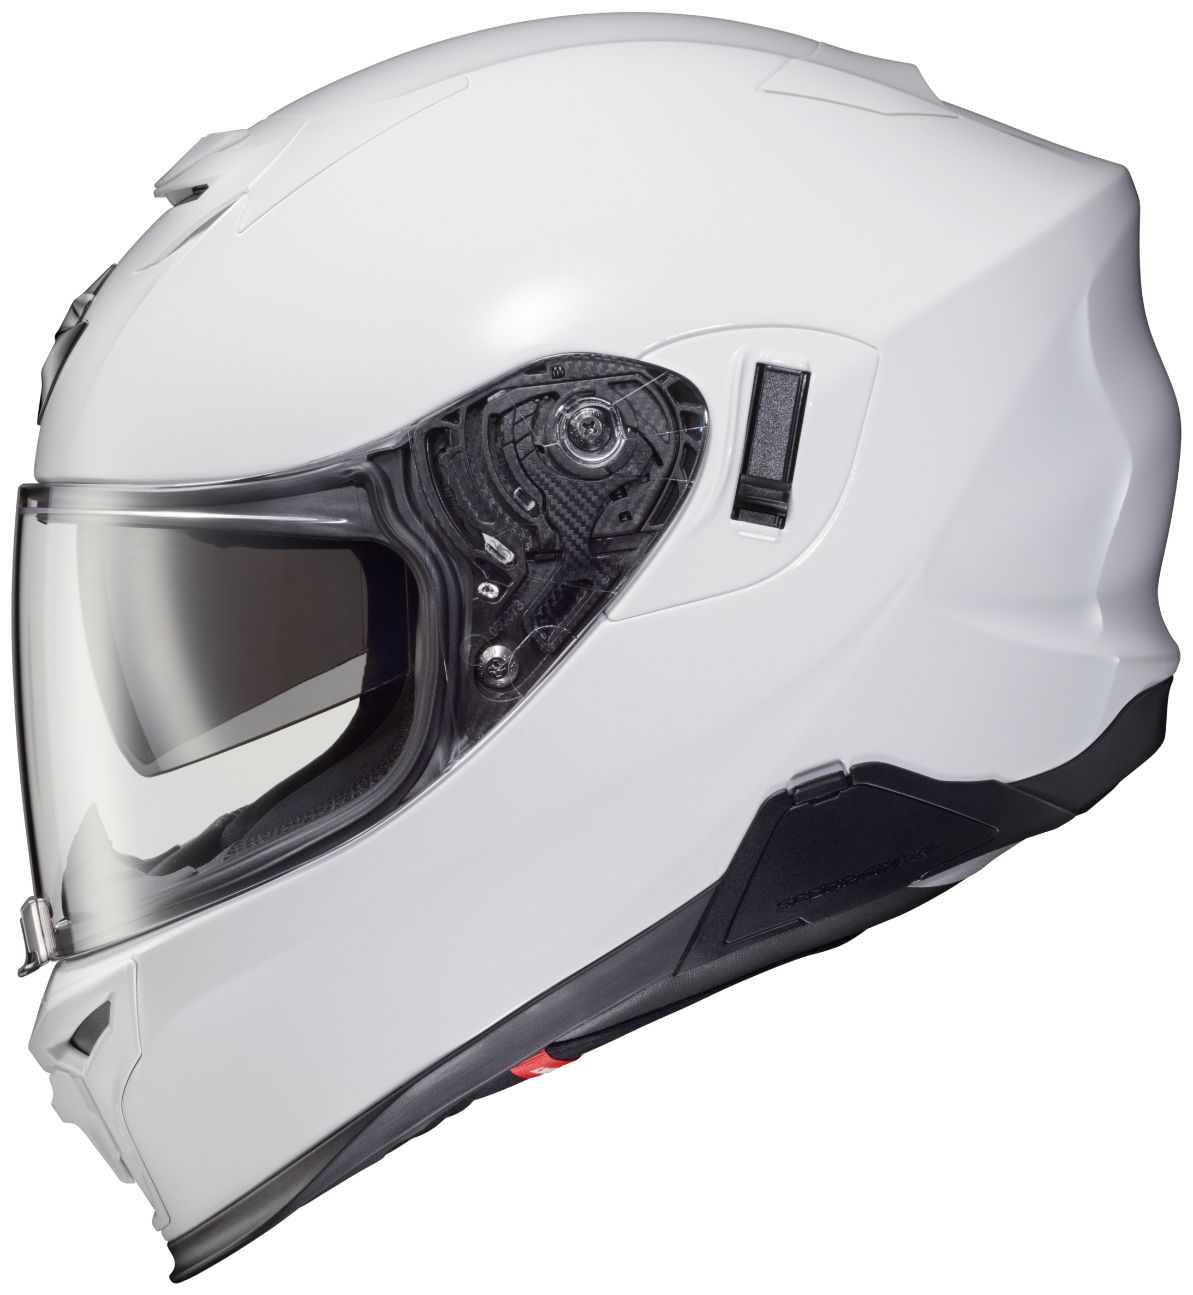 3xlまで Scorpion スコーピオン Exo T5 Helmet フルフェイスヘルメット ライダー バイク レーシング ツーリングにも かっこいい 大きいサイズあり おすすめ Amaclub Bayleafkitchen Co Uk